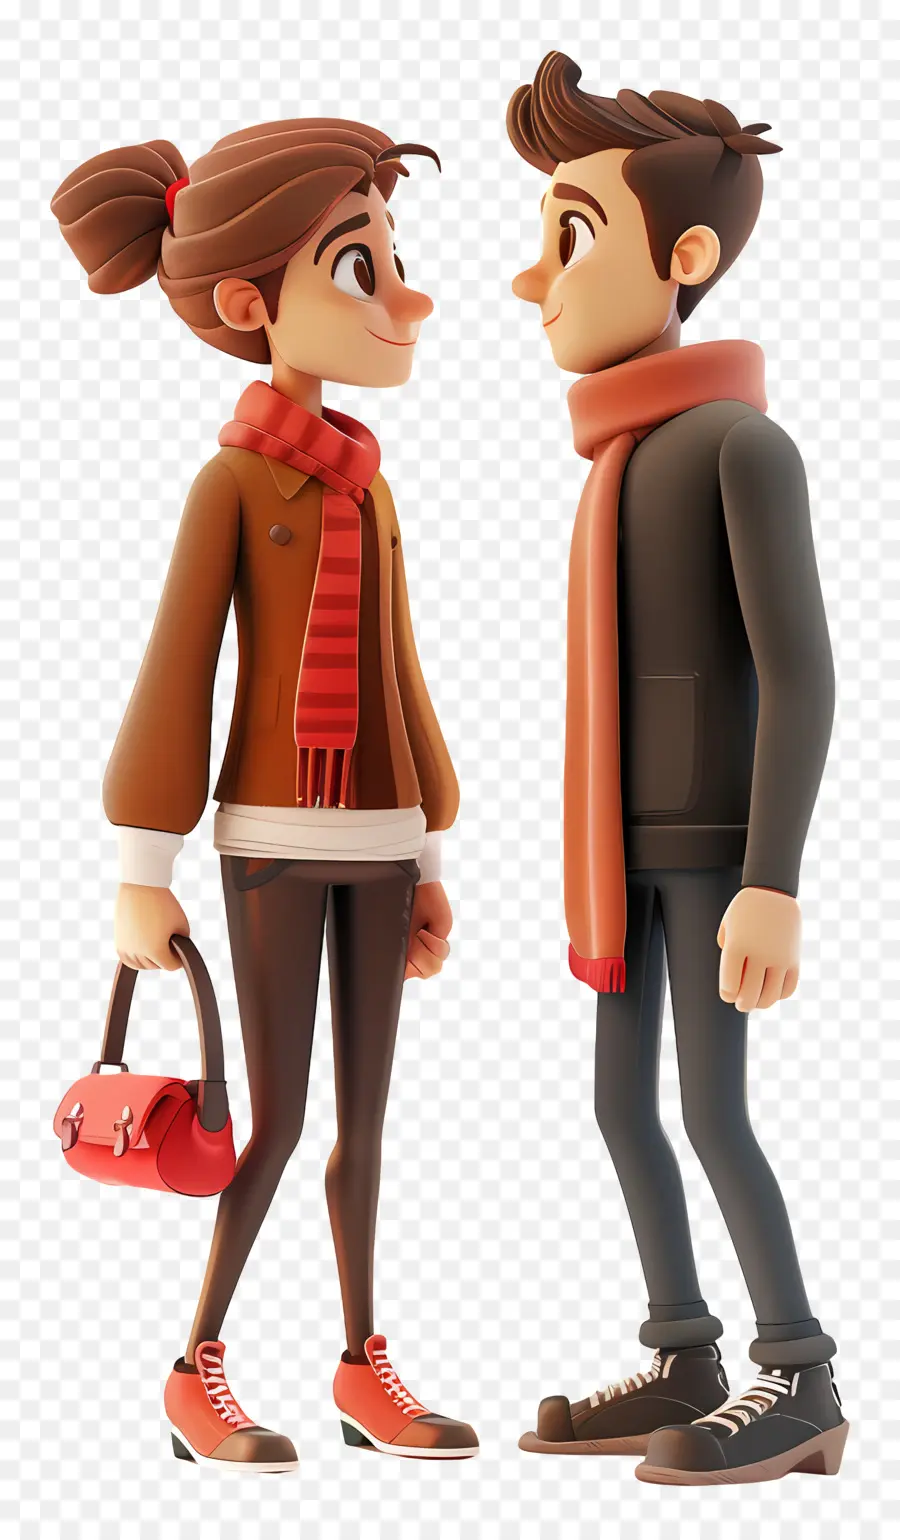 incontri inverno cappotti invernali sciarpe borse - Uomo e donna in cappotti in casa